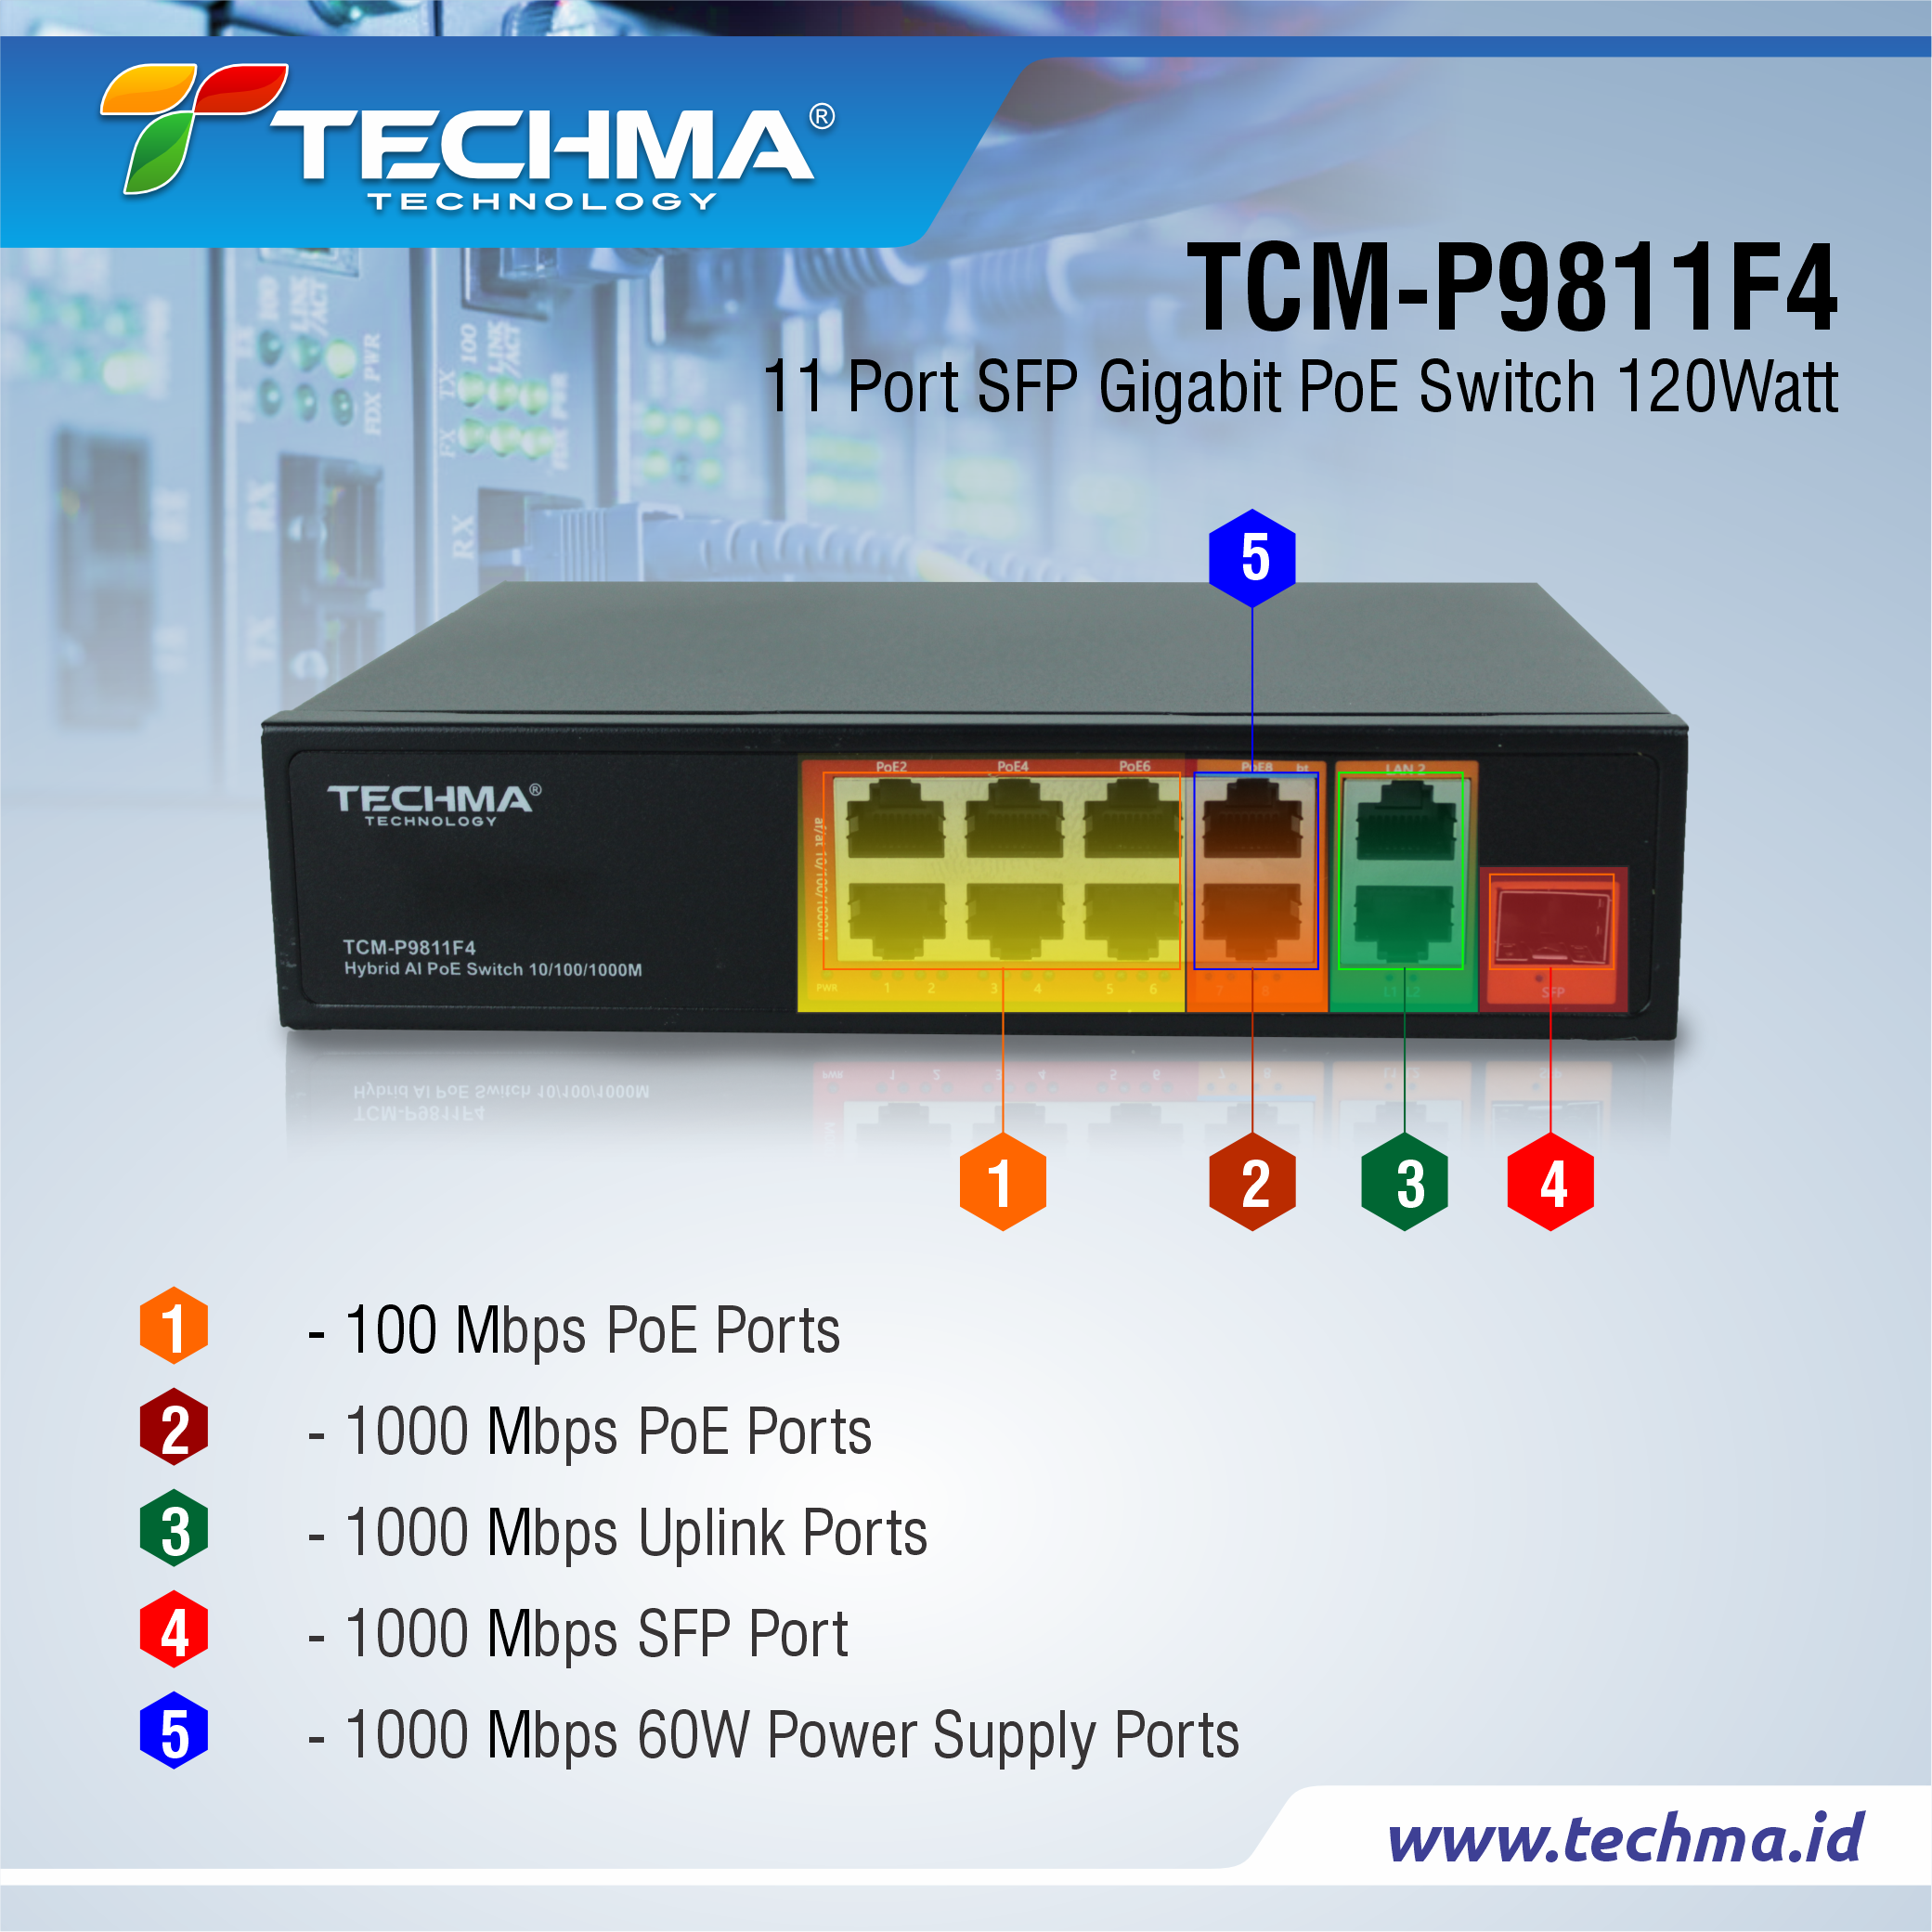 TCM-P9811F4 web 5